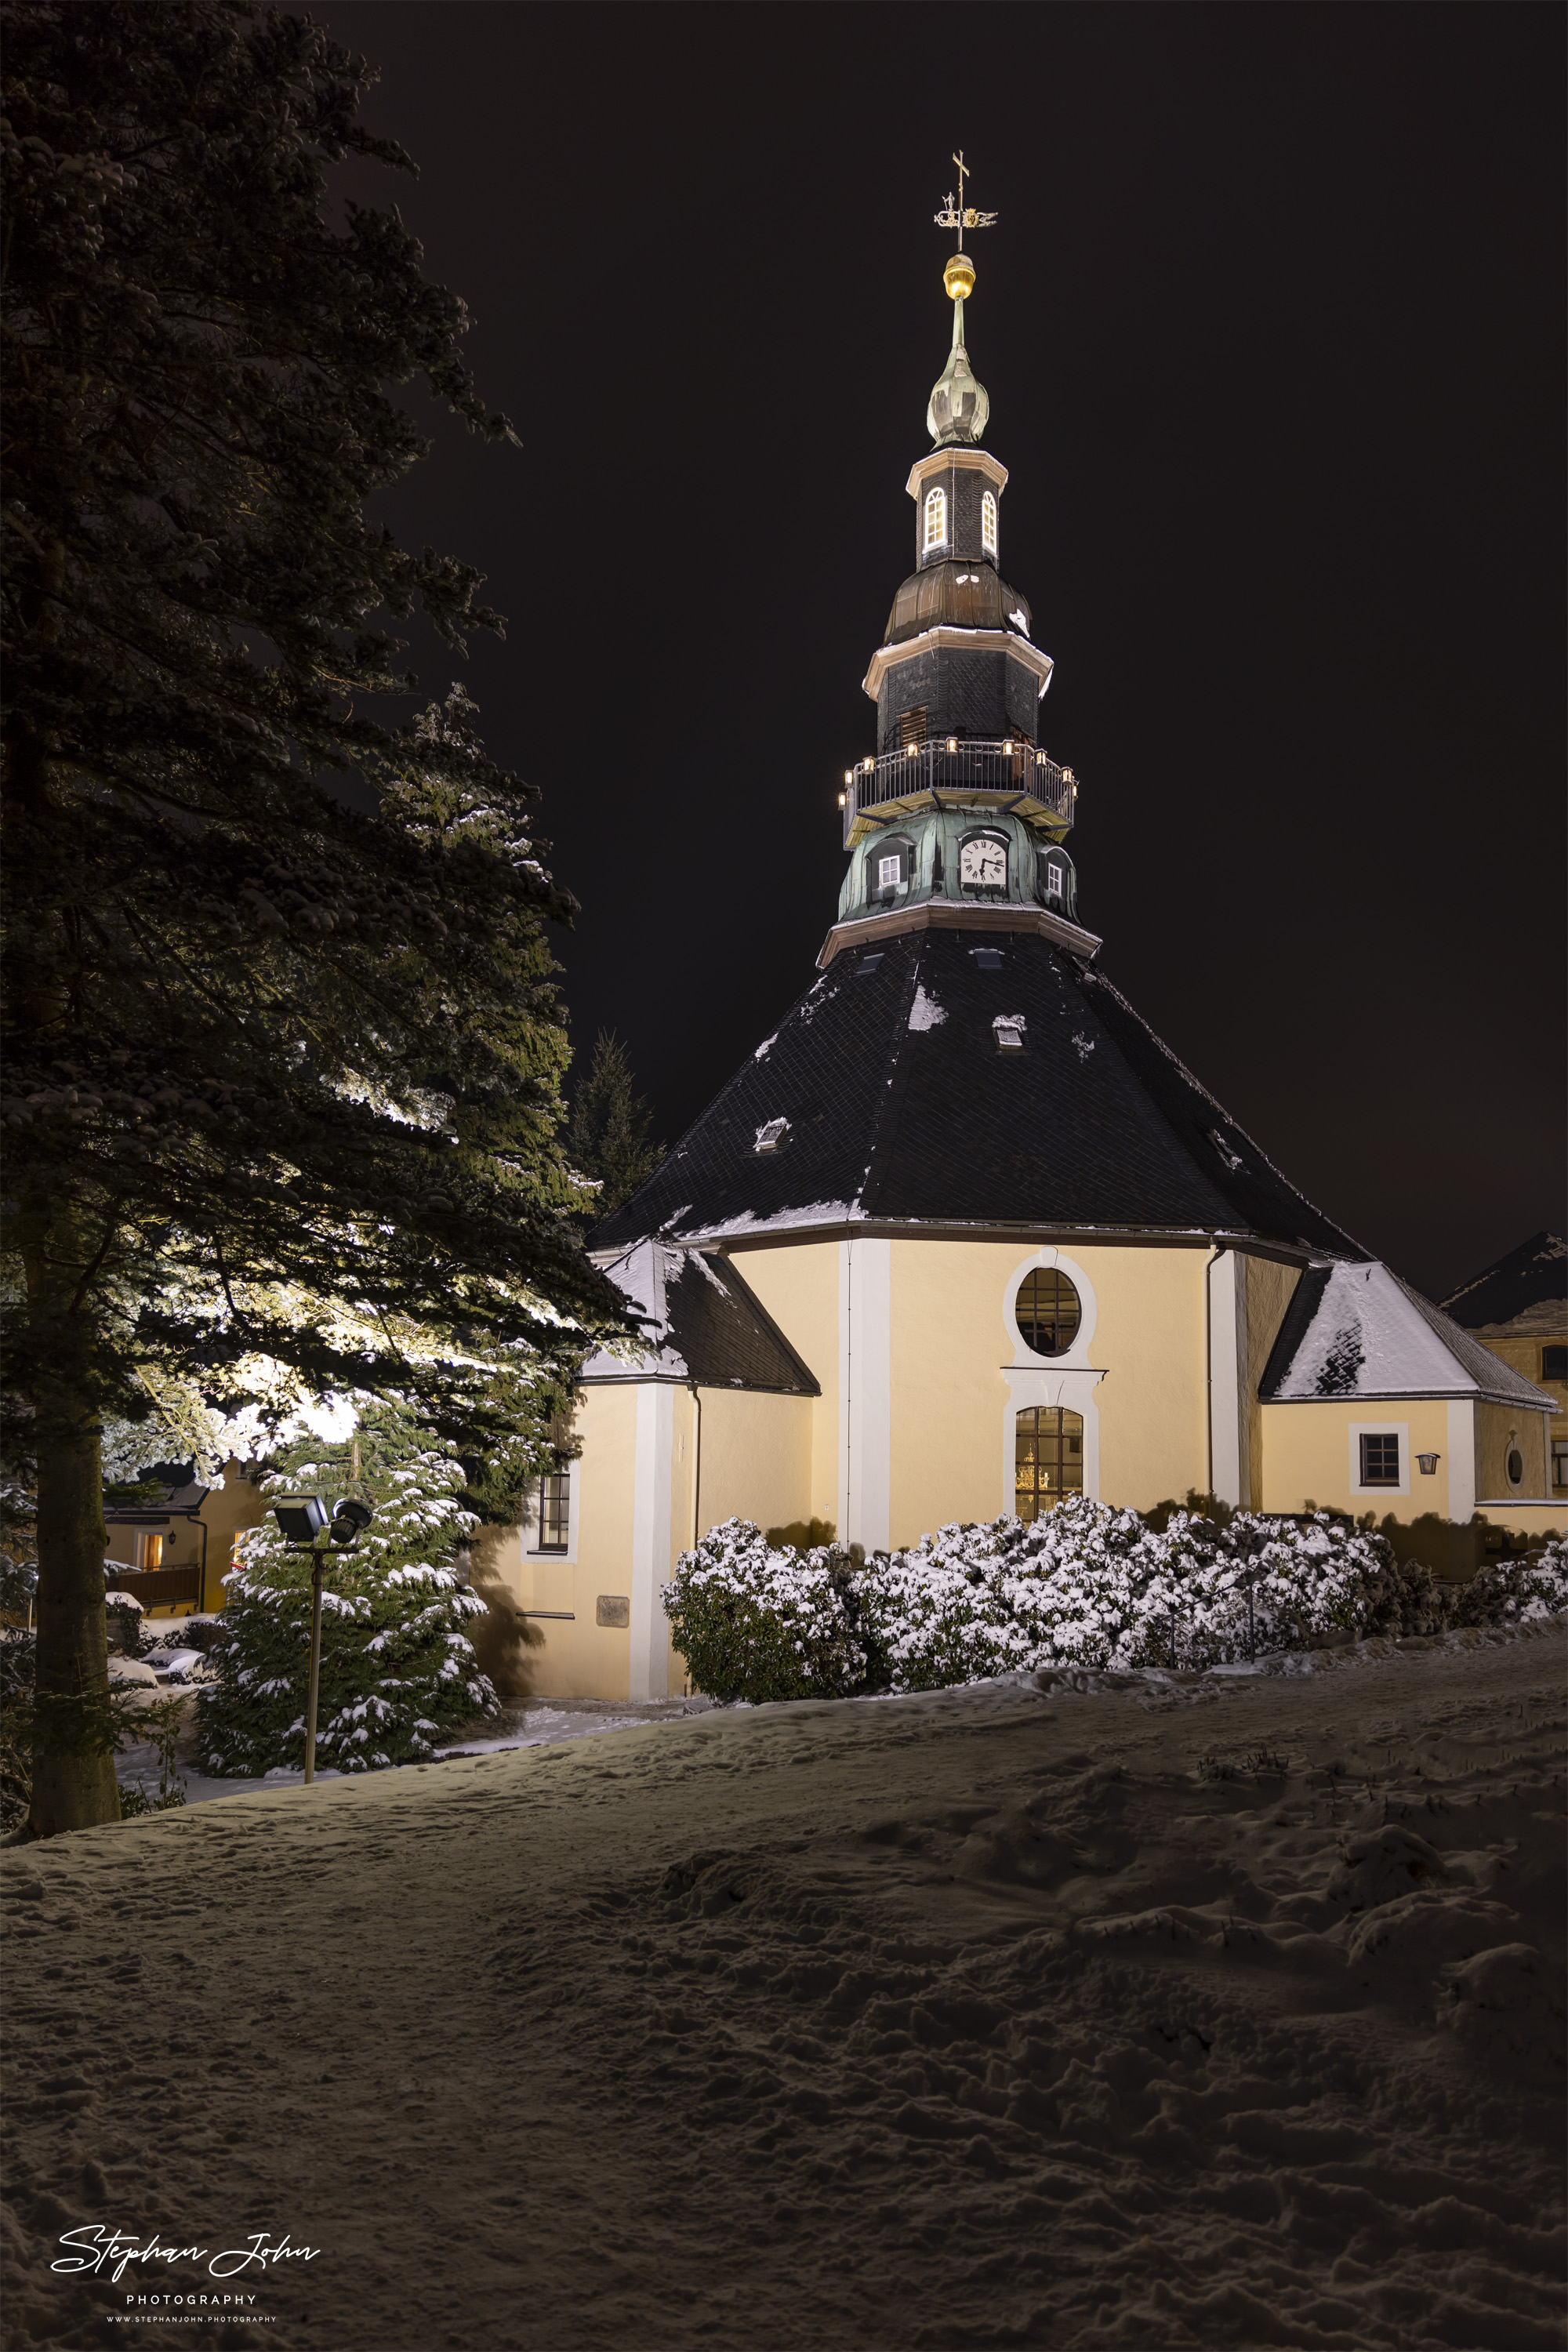 Die Seiffener Kirche, oder wie sie offiziell heißt, Bergkirche Seiffen, ist die evangelisch-lutherische Kirche in der Gemeinde Seiffen im Erzgebirgskreis in Sachsen. Sie ist das Wahrzeichen des Ortes und ein beliebtes Motiv der Erzgebirgischen Volkskunst. (Wikipedia)